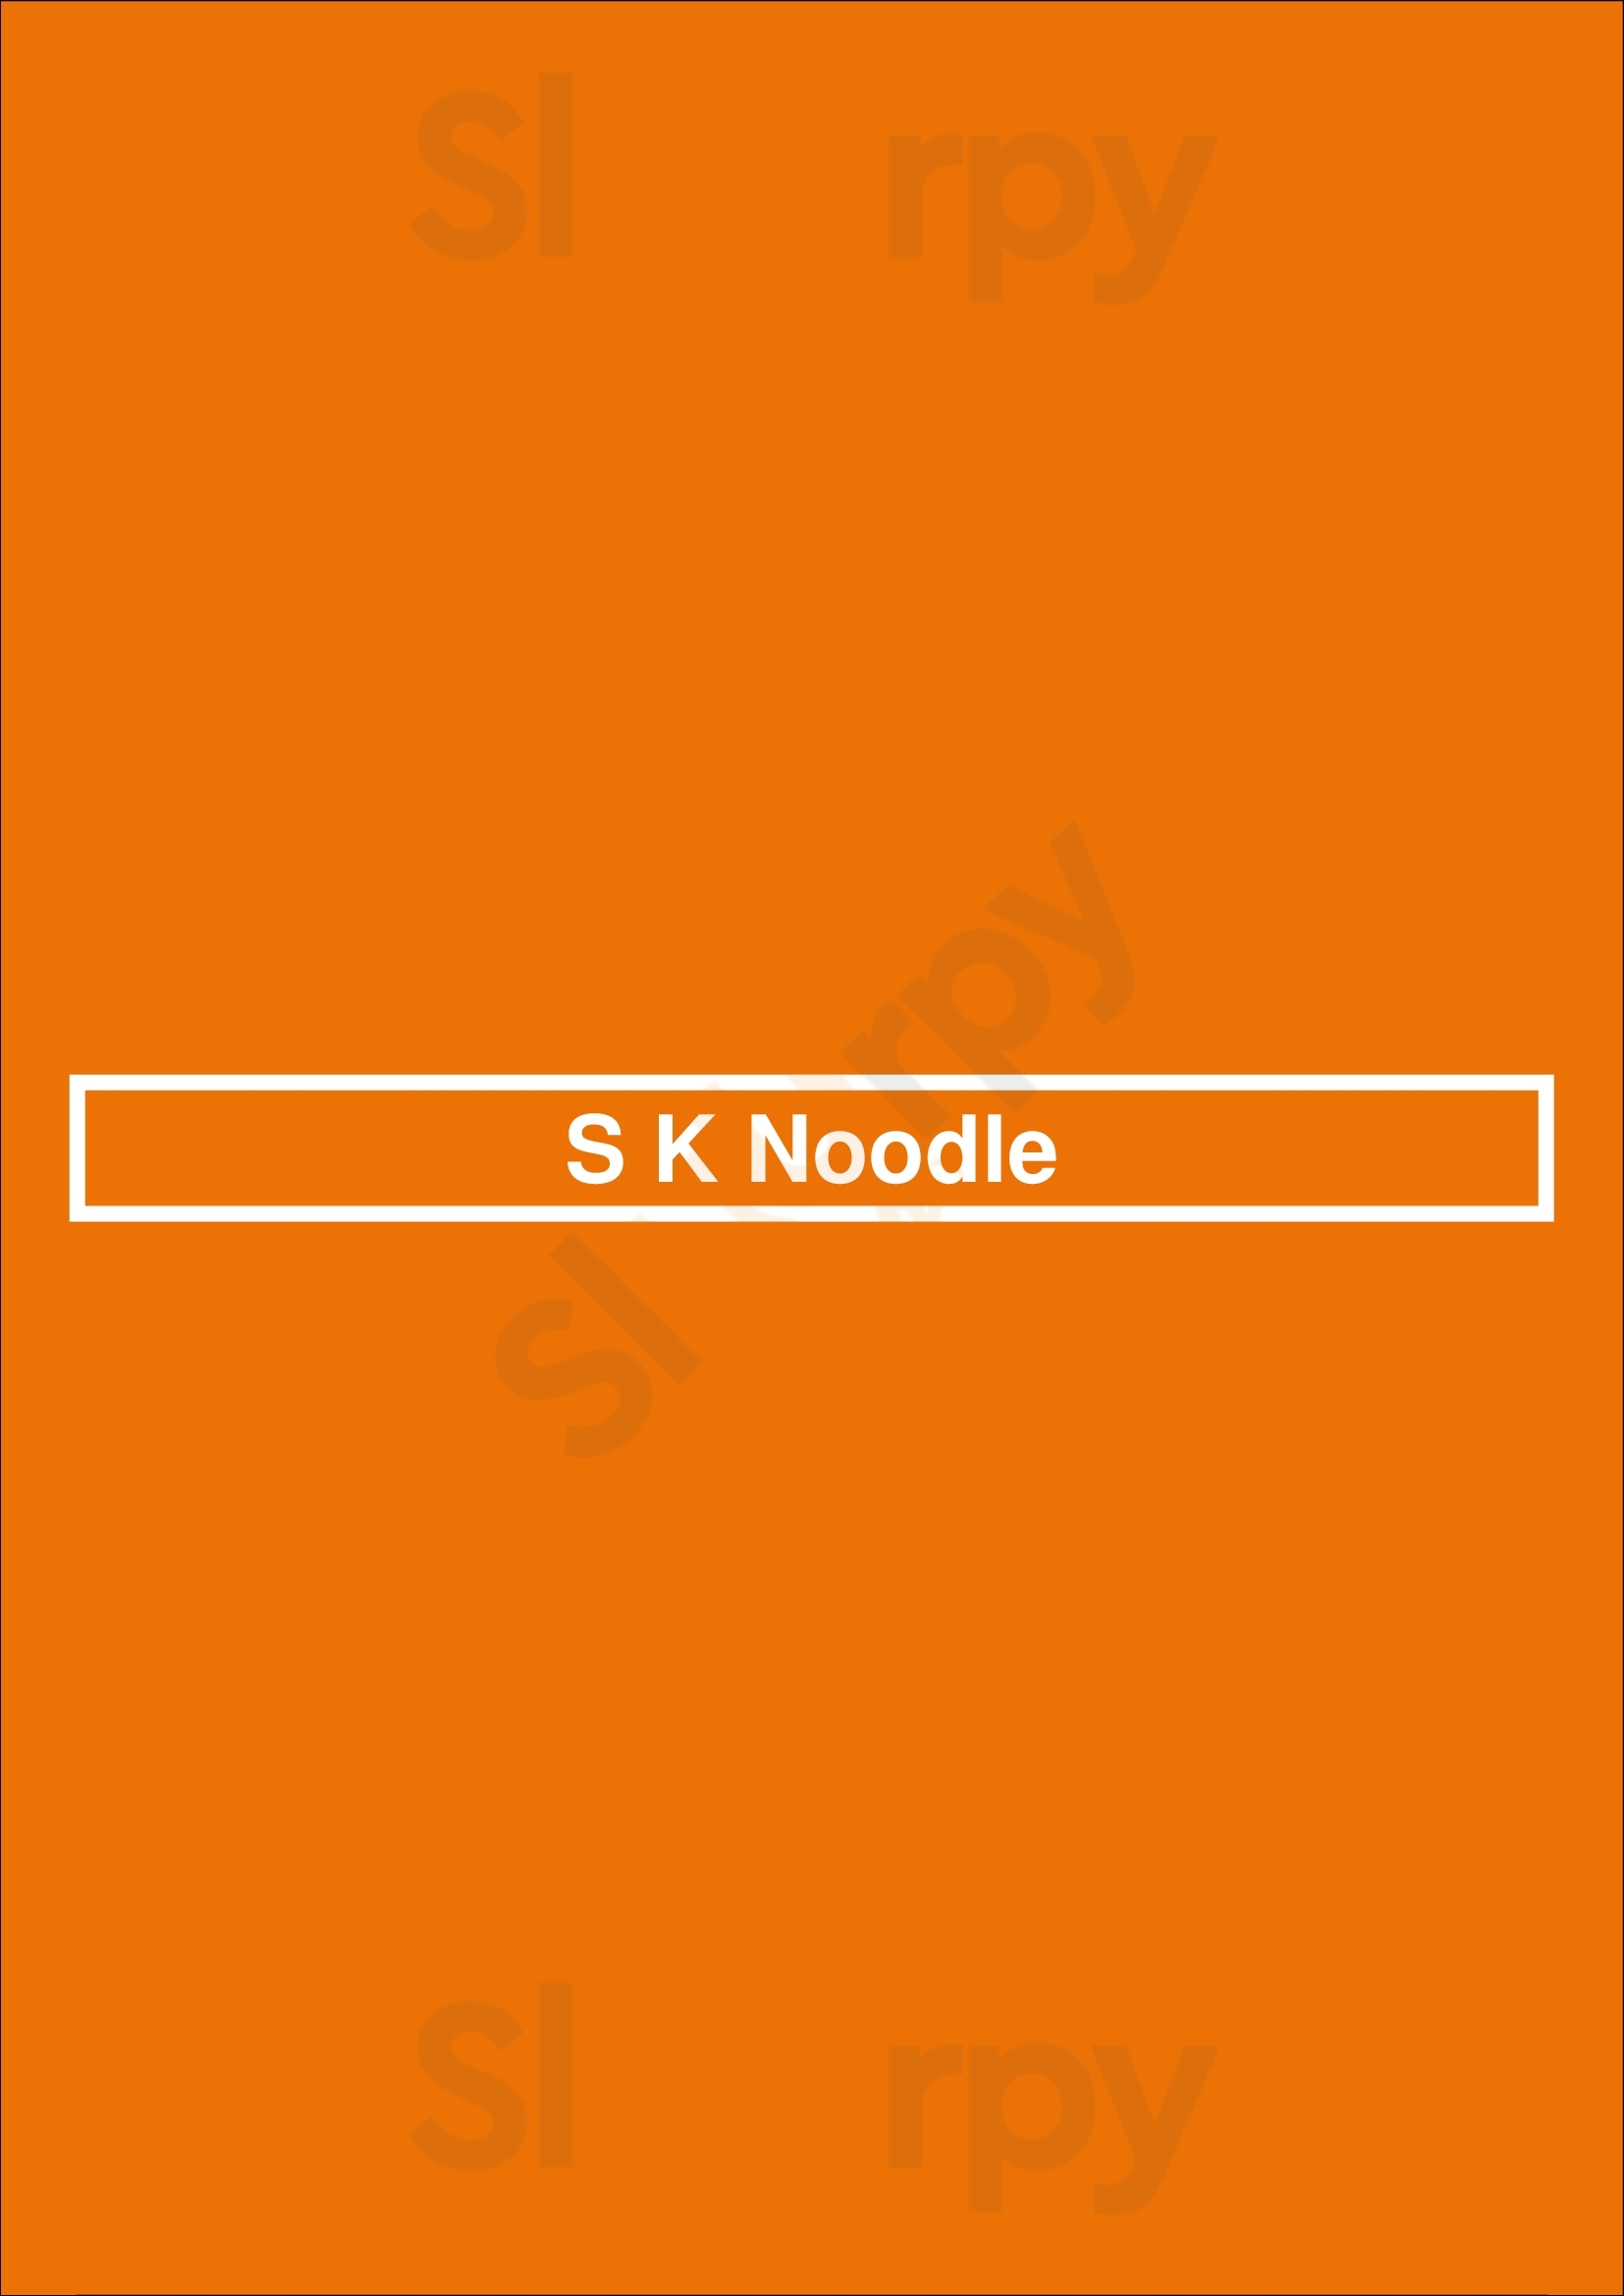 S K Noodle Sparks Menu - 1